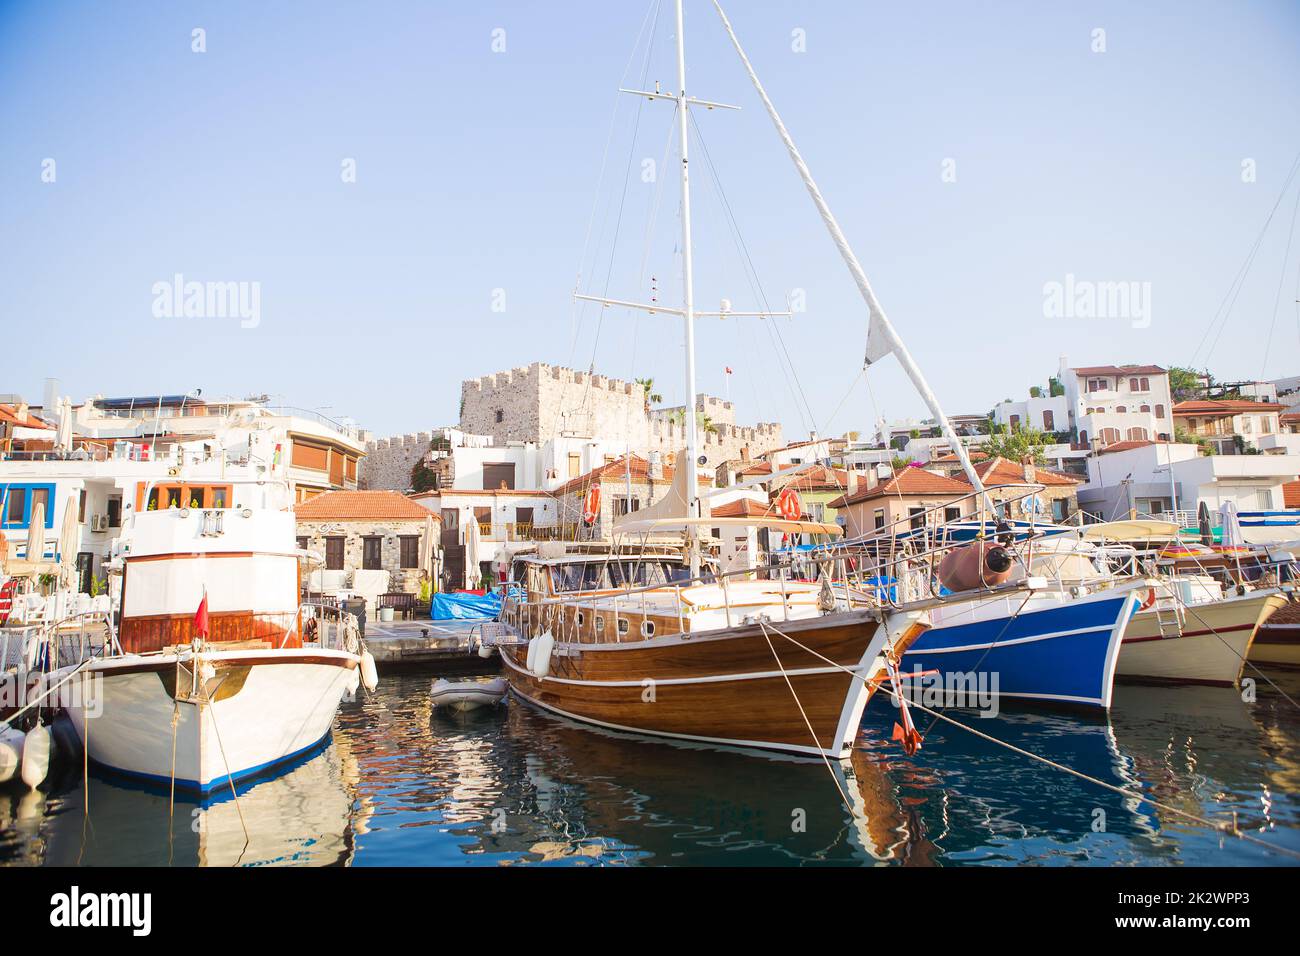 Yachten liegen am Pier im türkischen Nationalpark vor. Mittelmeerraum. Der berühmte Ort zwischen Marmaris und Gocek. Yachtingianisches Leben. Stockfoto